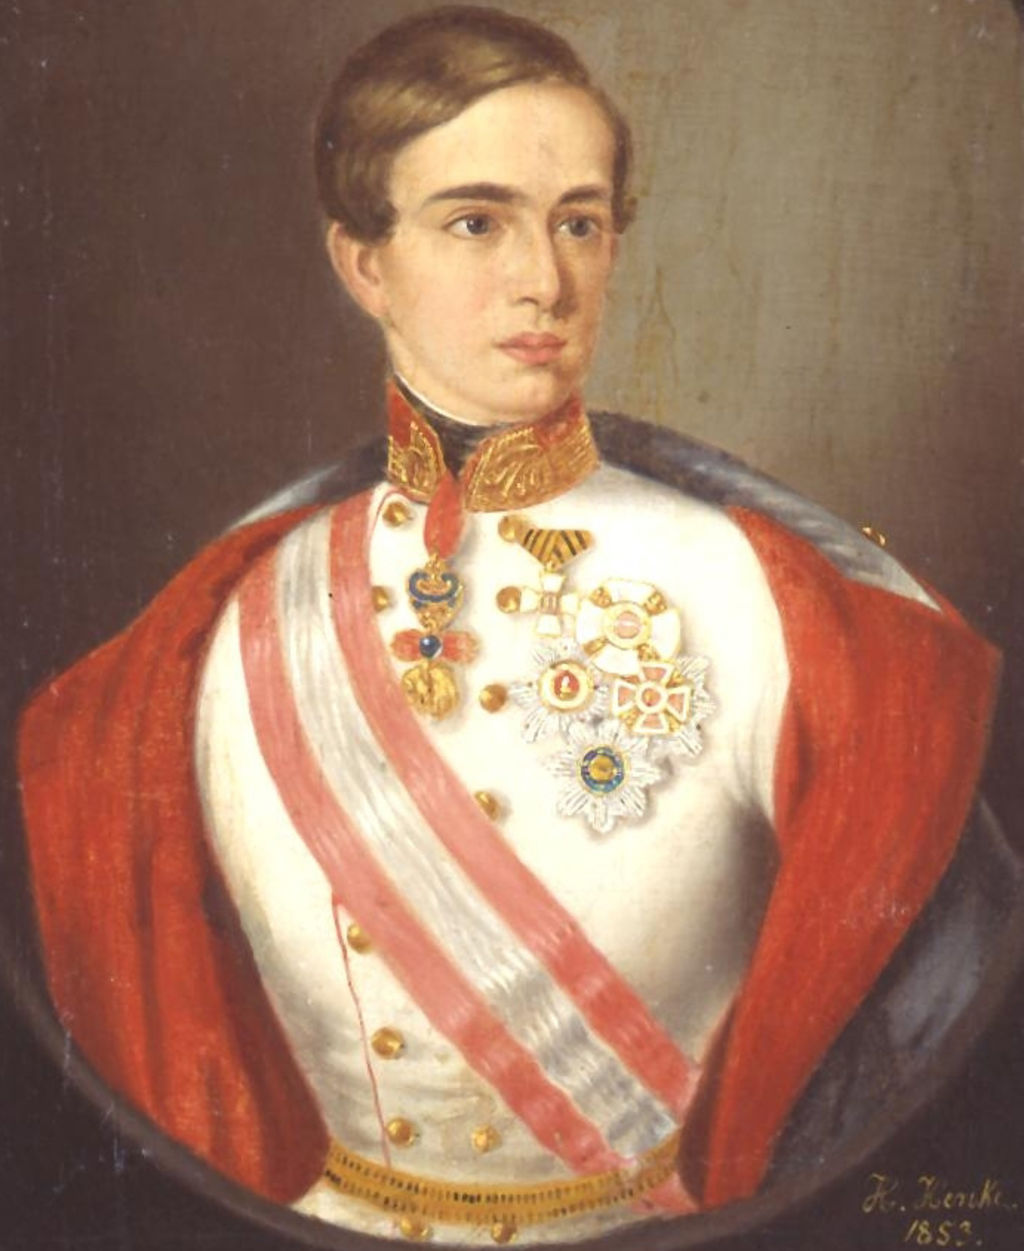 Exponat: Gemäde: "Franz Joseph I., Kaiser von Österreich ", 1853